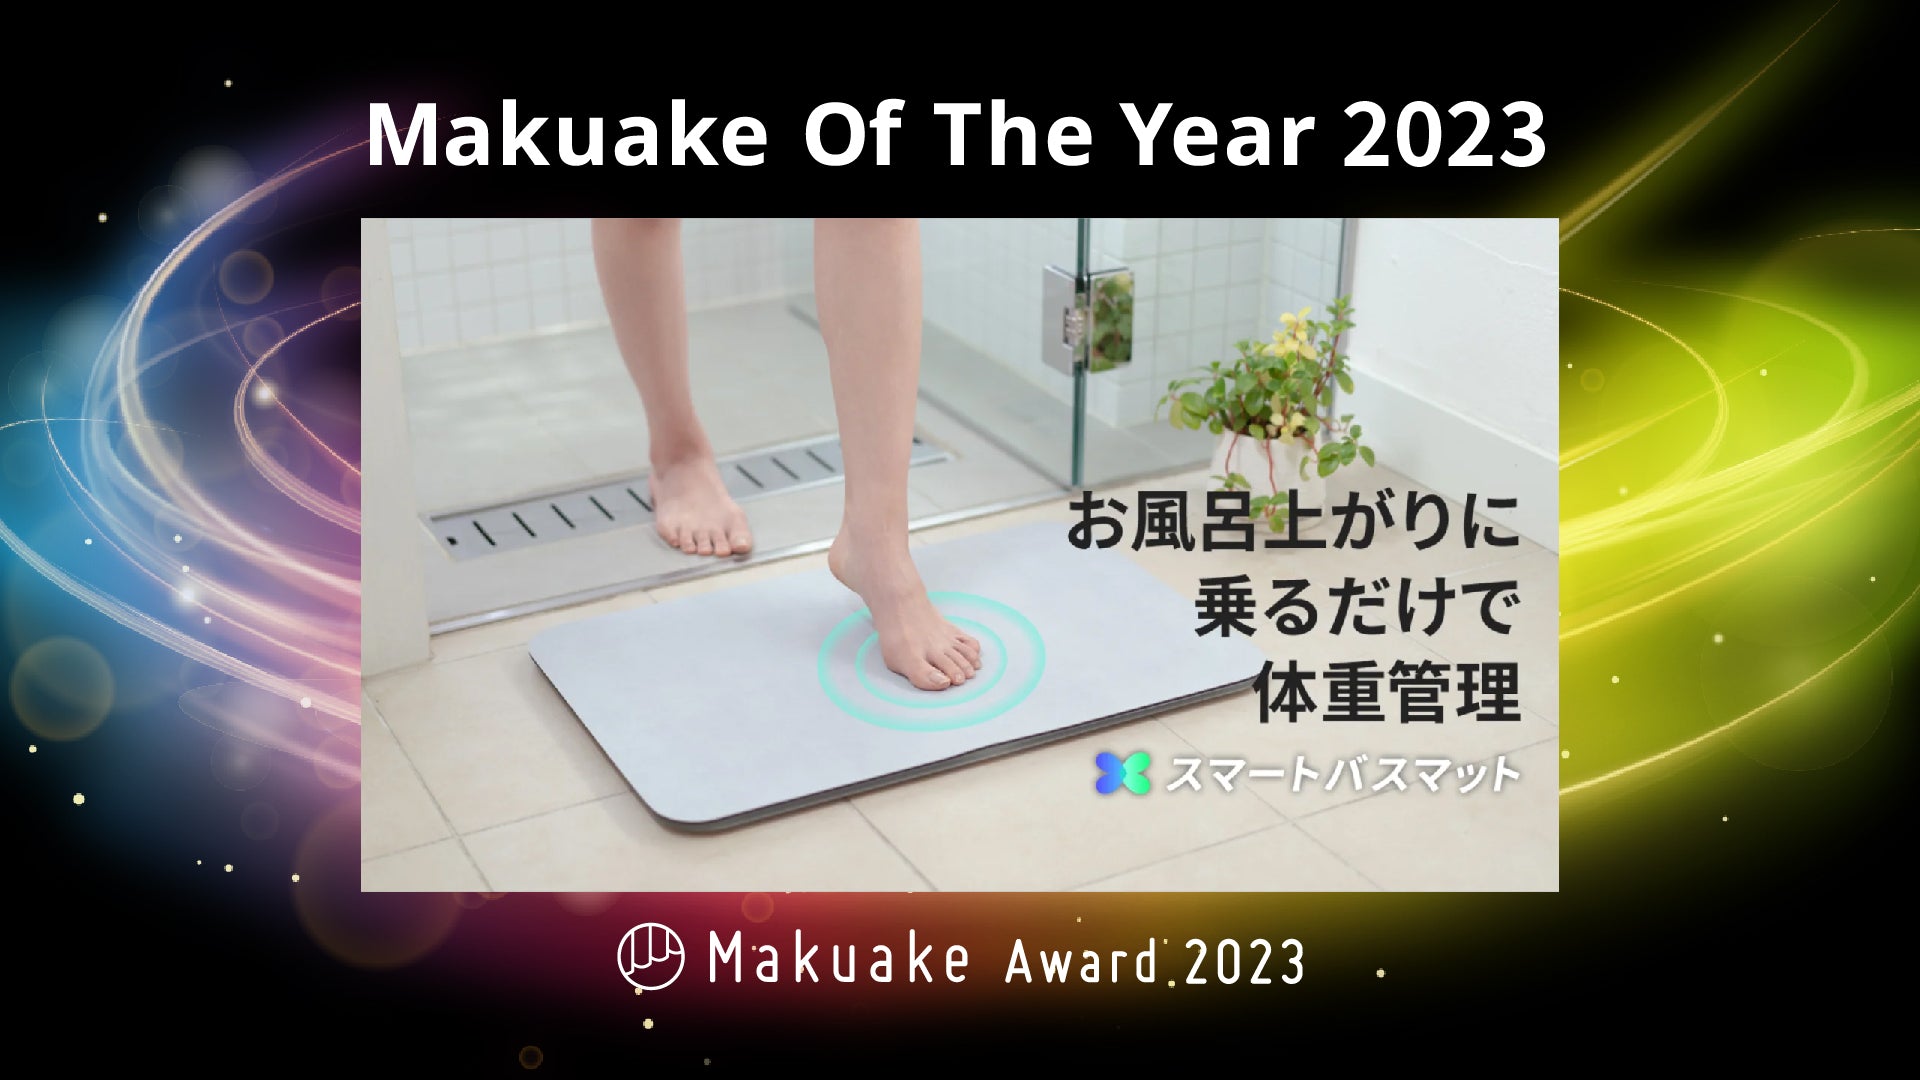 体重測定できるバスマット「スマートバスマット」が、Makuake Of The ...